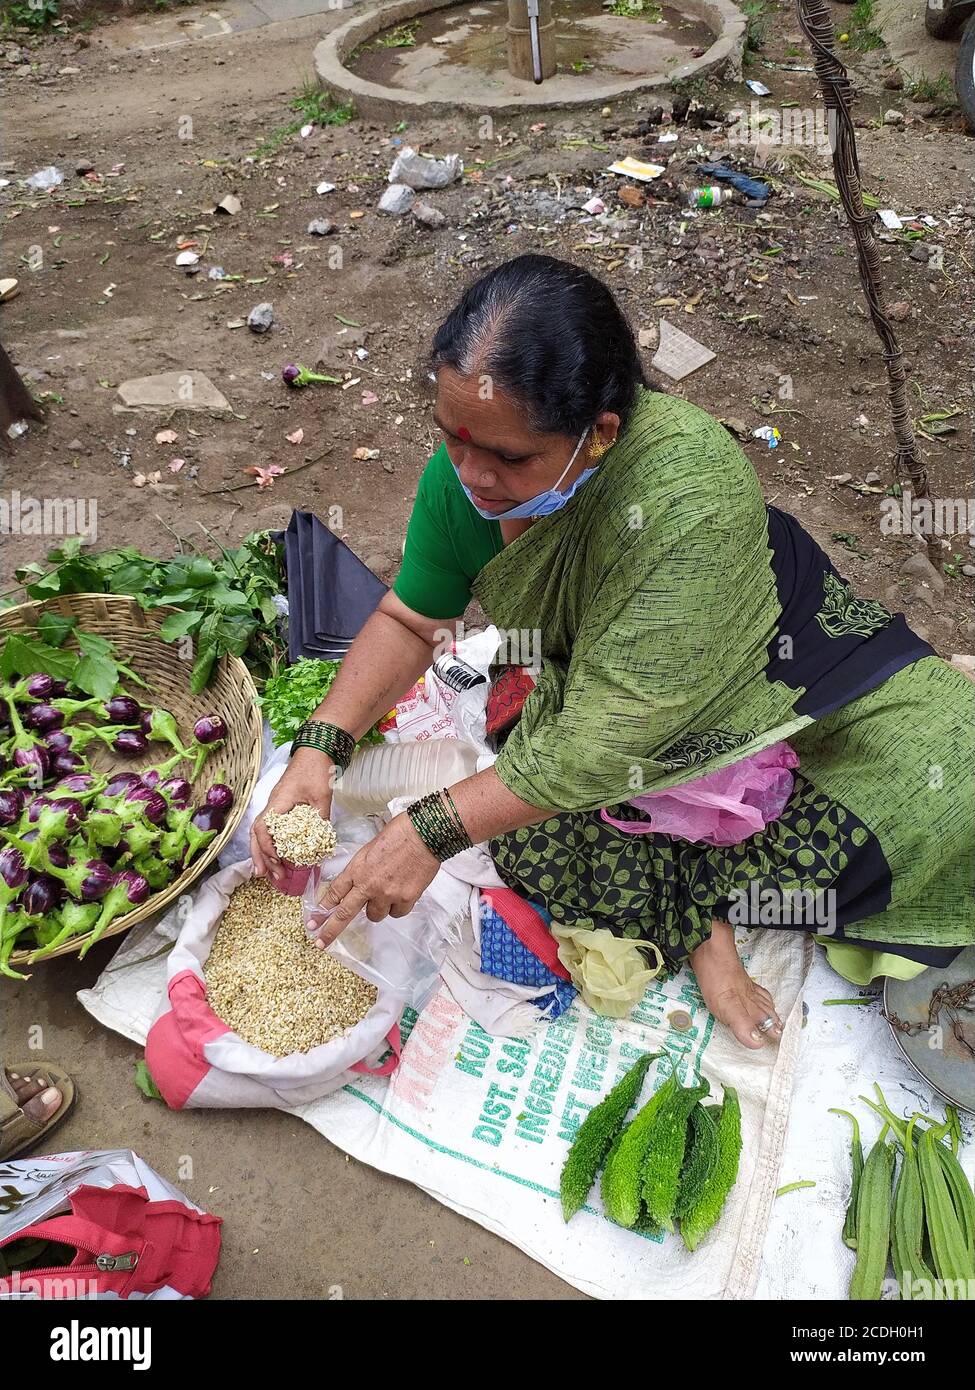 Une dame âgée porte un masque facial et vend des légumes dans la cour du marché. Mesurer les légumineuses à grains de papillon à l'aide d'un ustensile de mesure. Banque D'Images